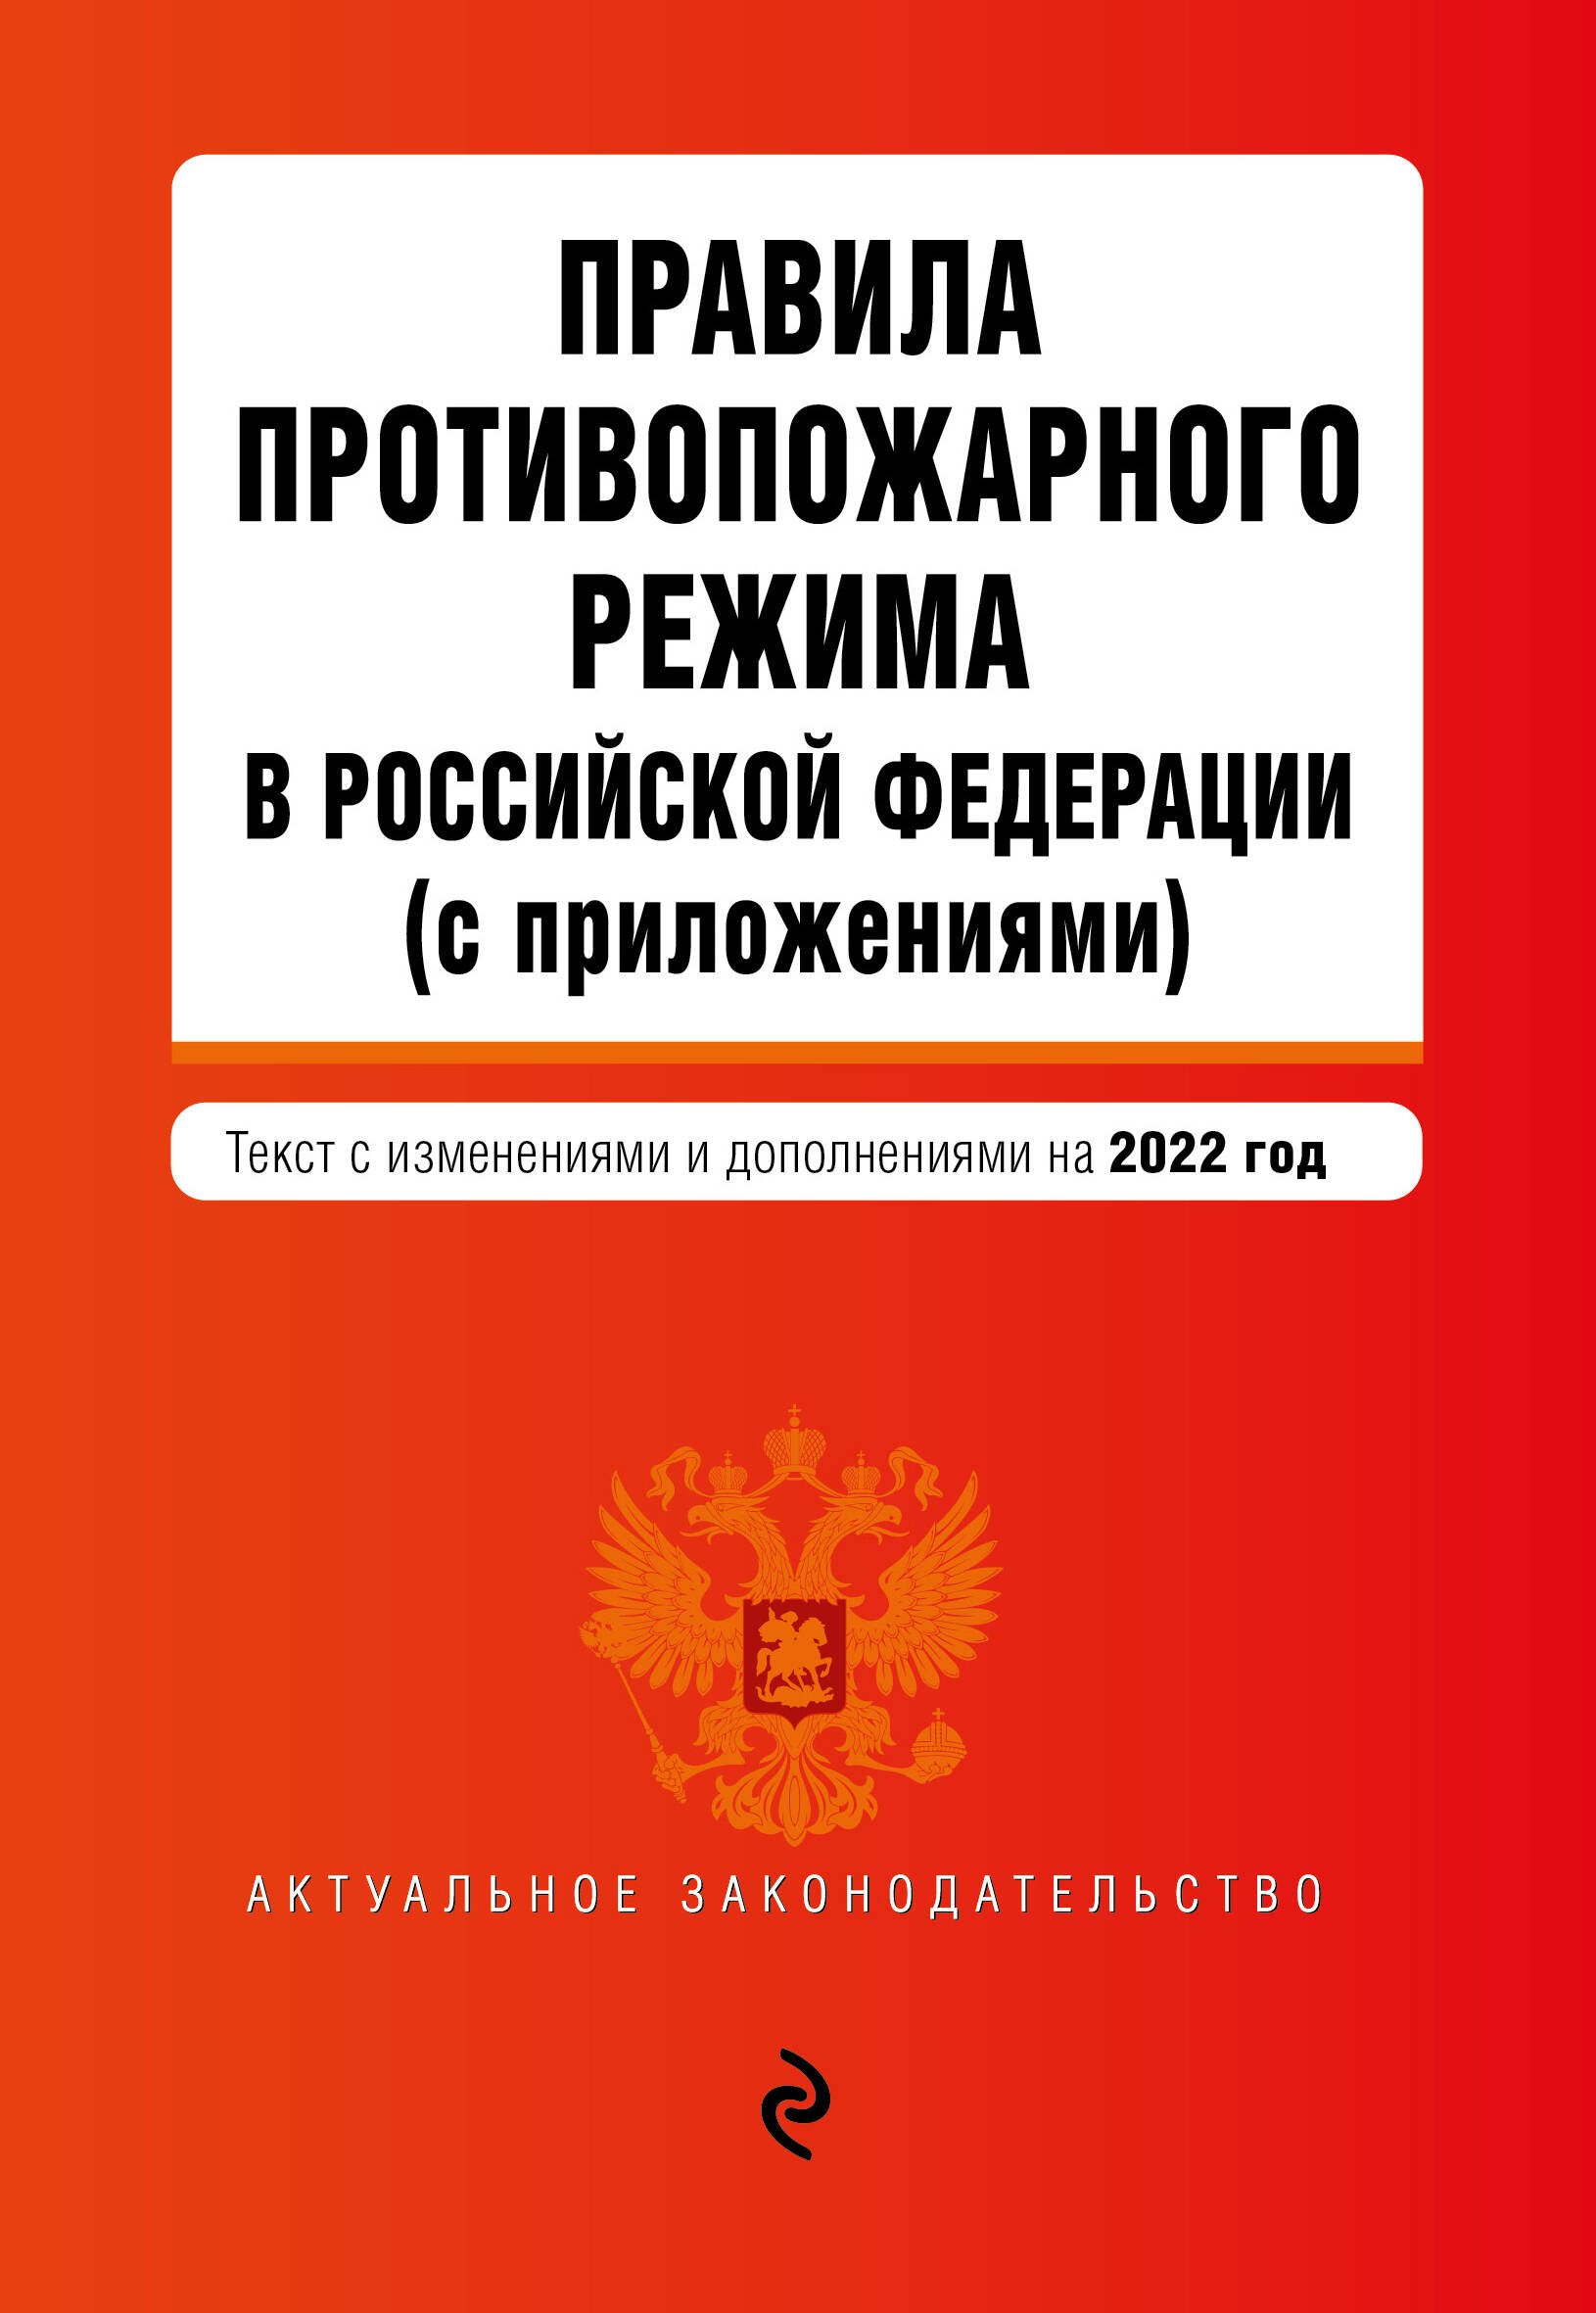  - Правила противопожарного режима в Российской Федерации (с приложениями): текст изменениями и дополнениями на 2022 год